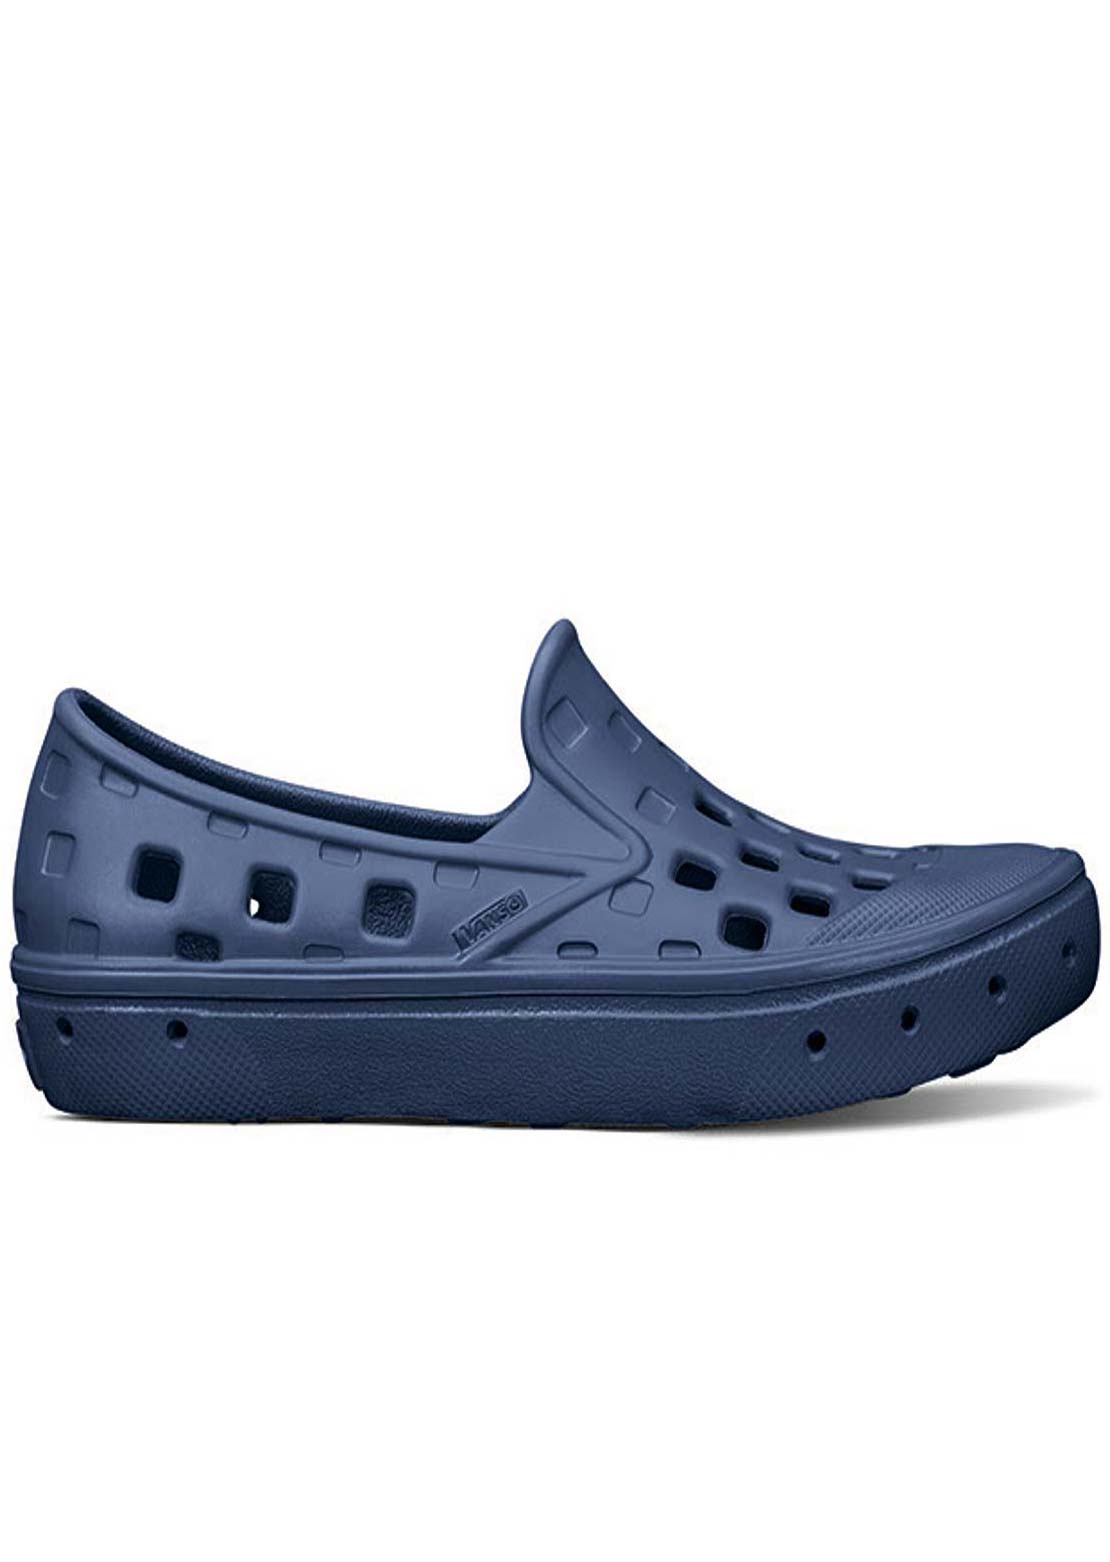 Vans Toddler Slip-On Trek Shoes Navy